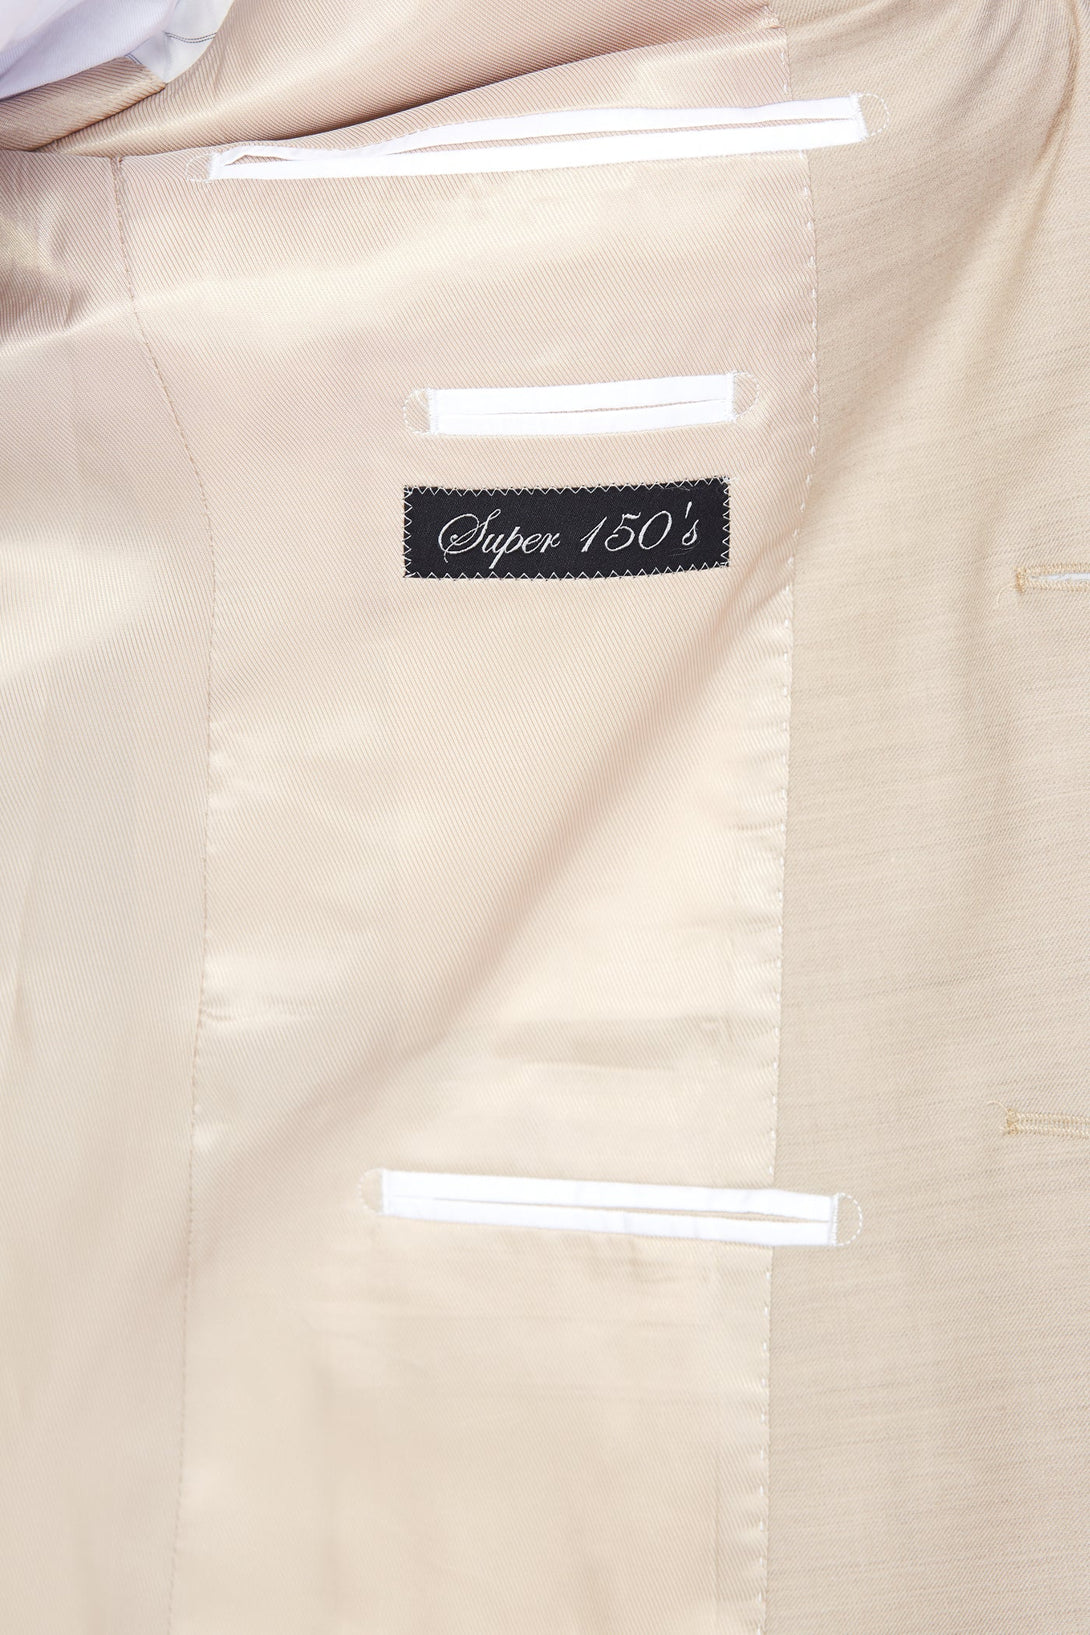 Beige Super 150's Suit-The Suit Spot